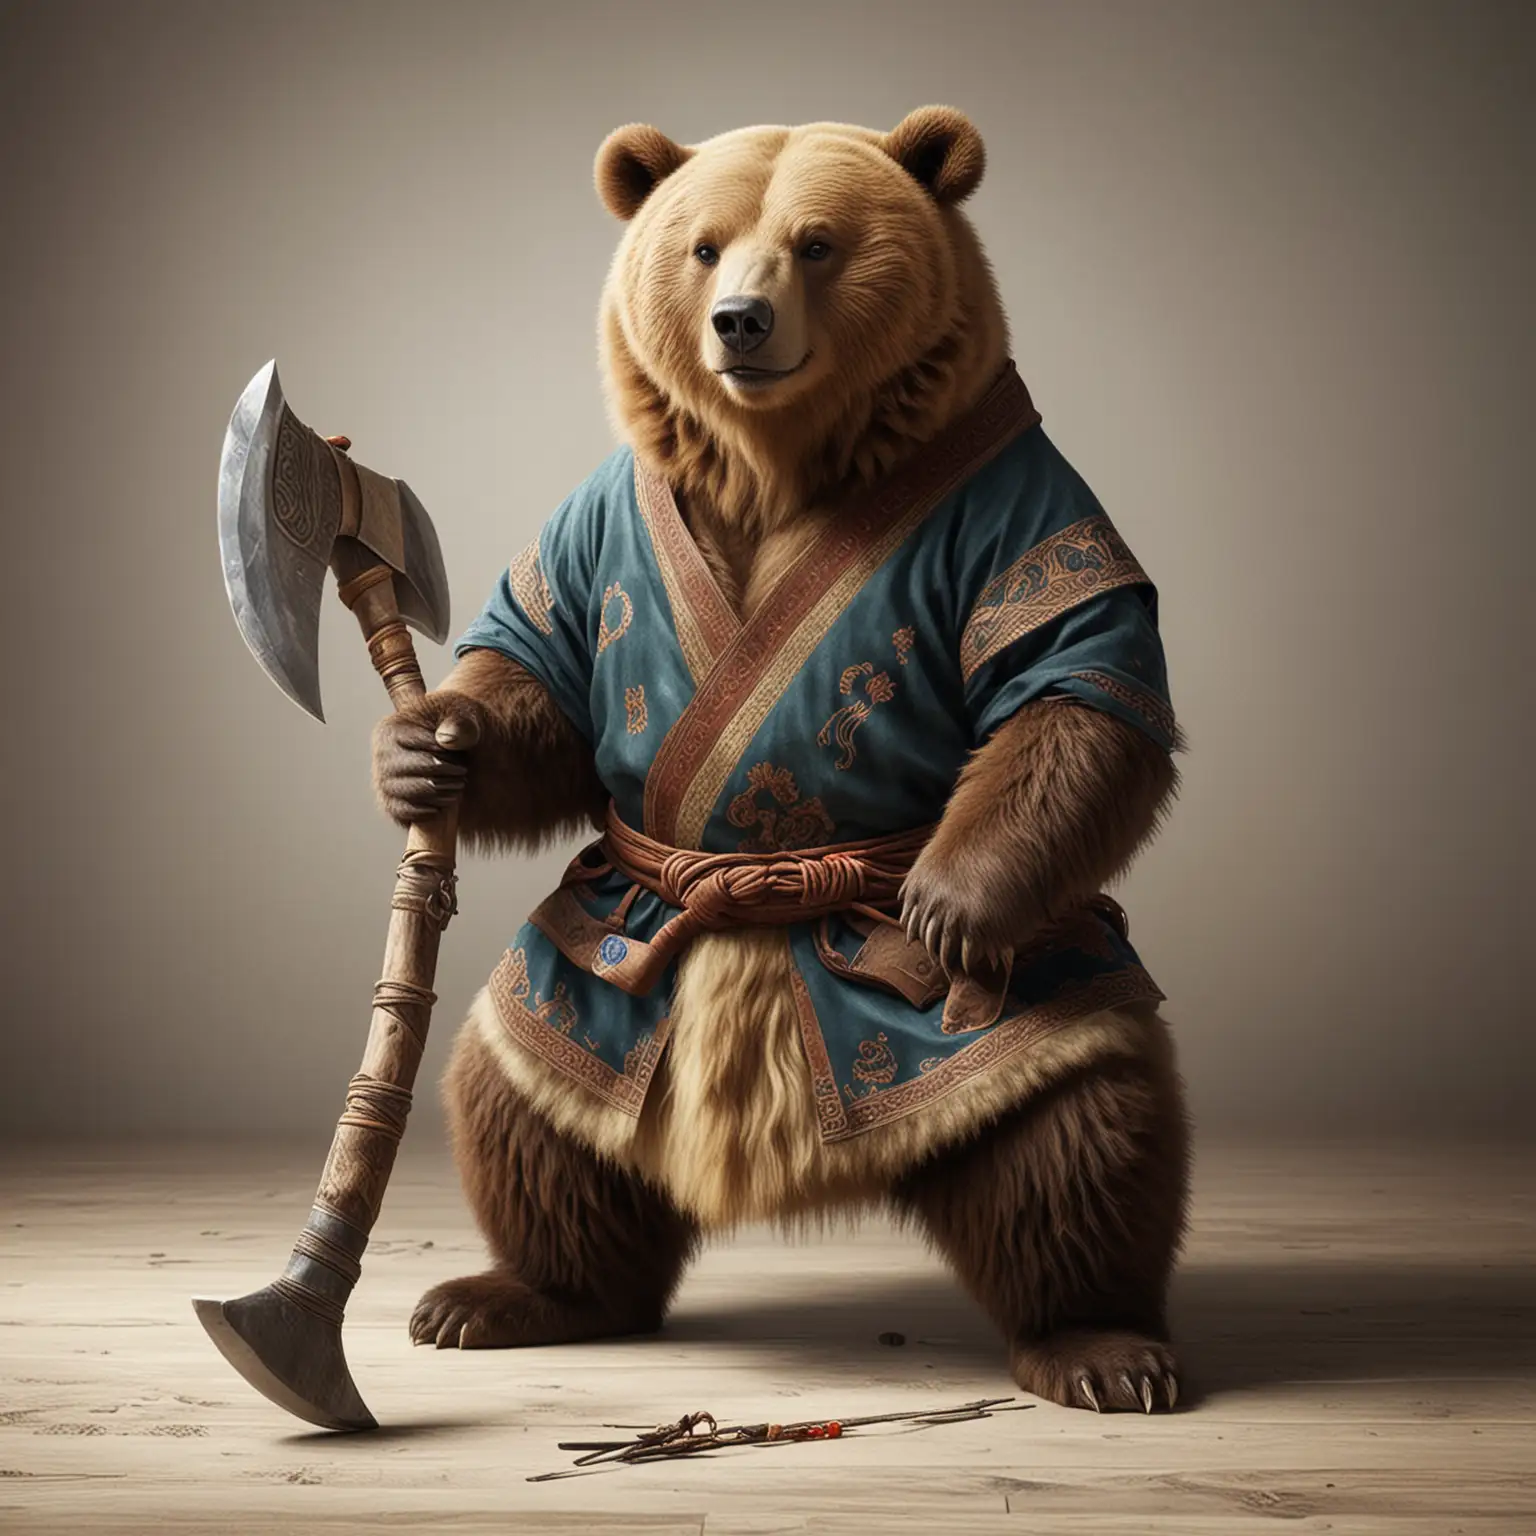 реалистичный  медведь  в одежде монгольца-чингисхана с топором у которого большое лезвие  в полный рост стоит на полу